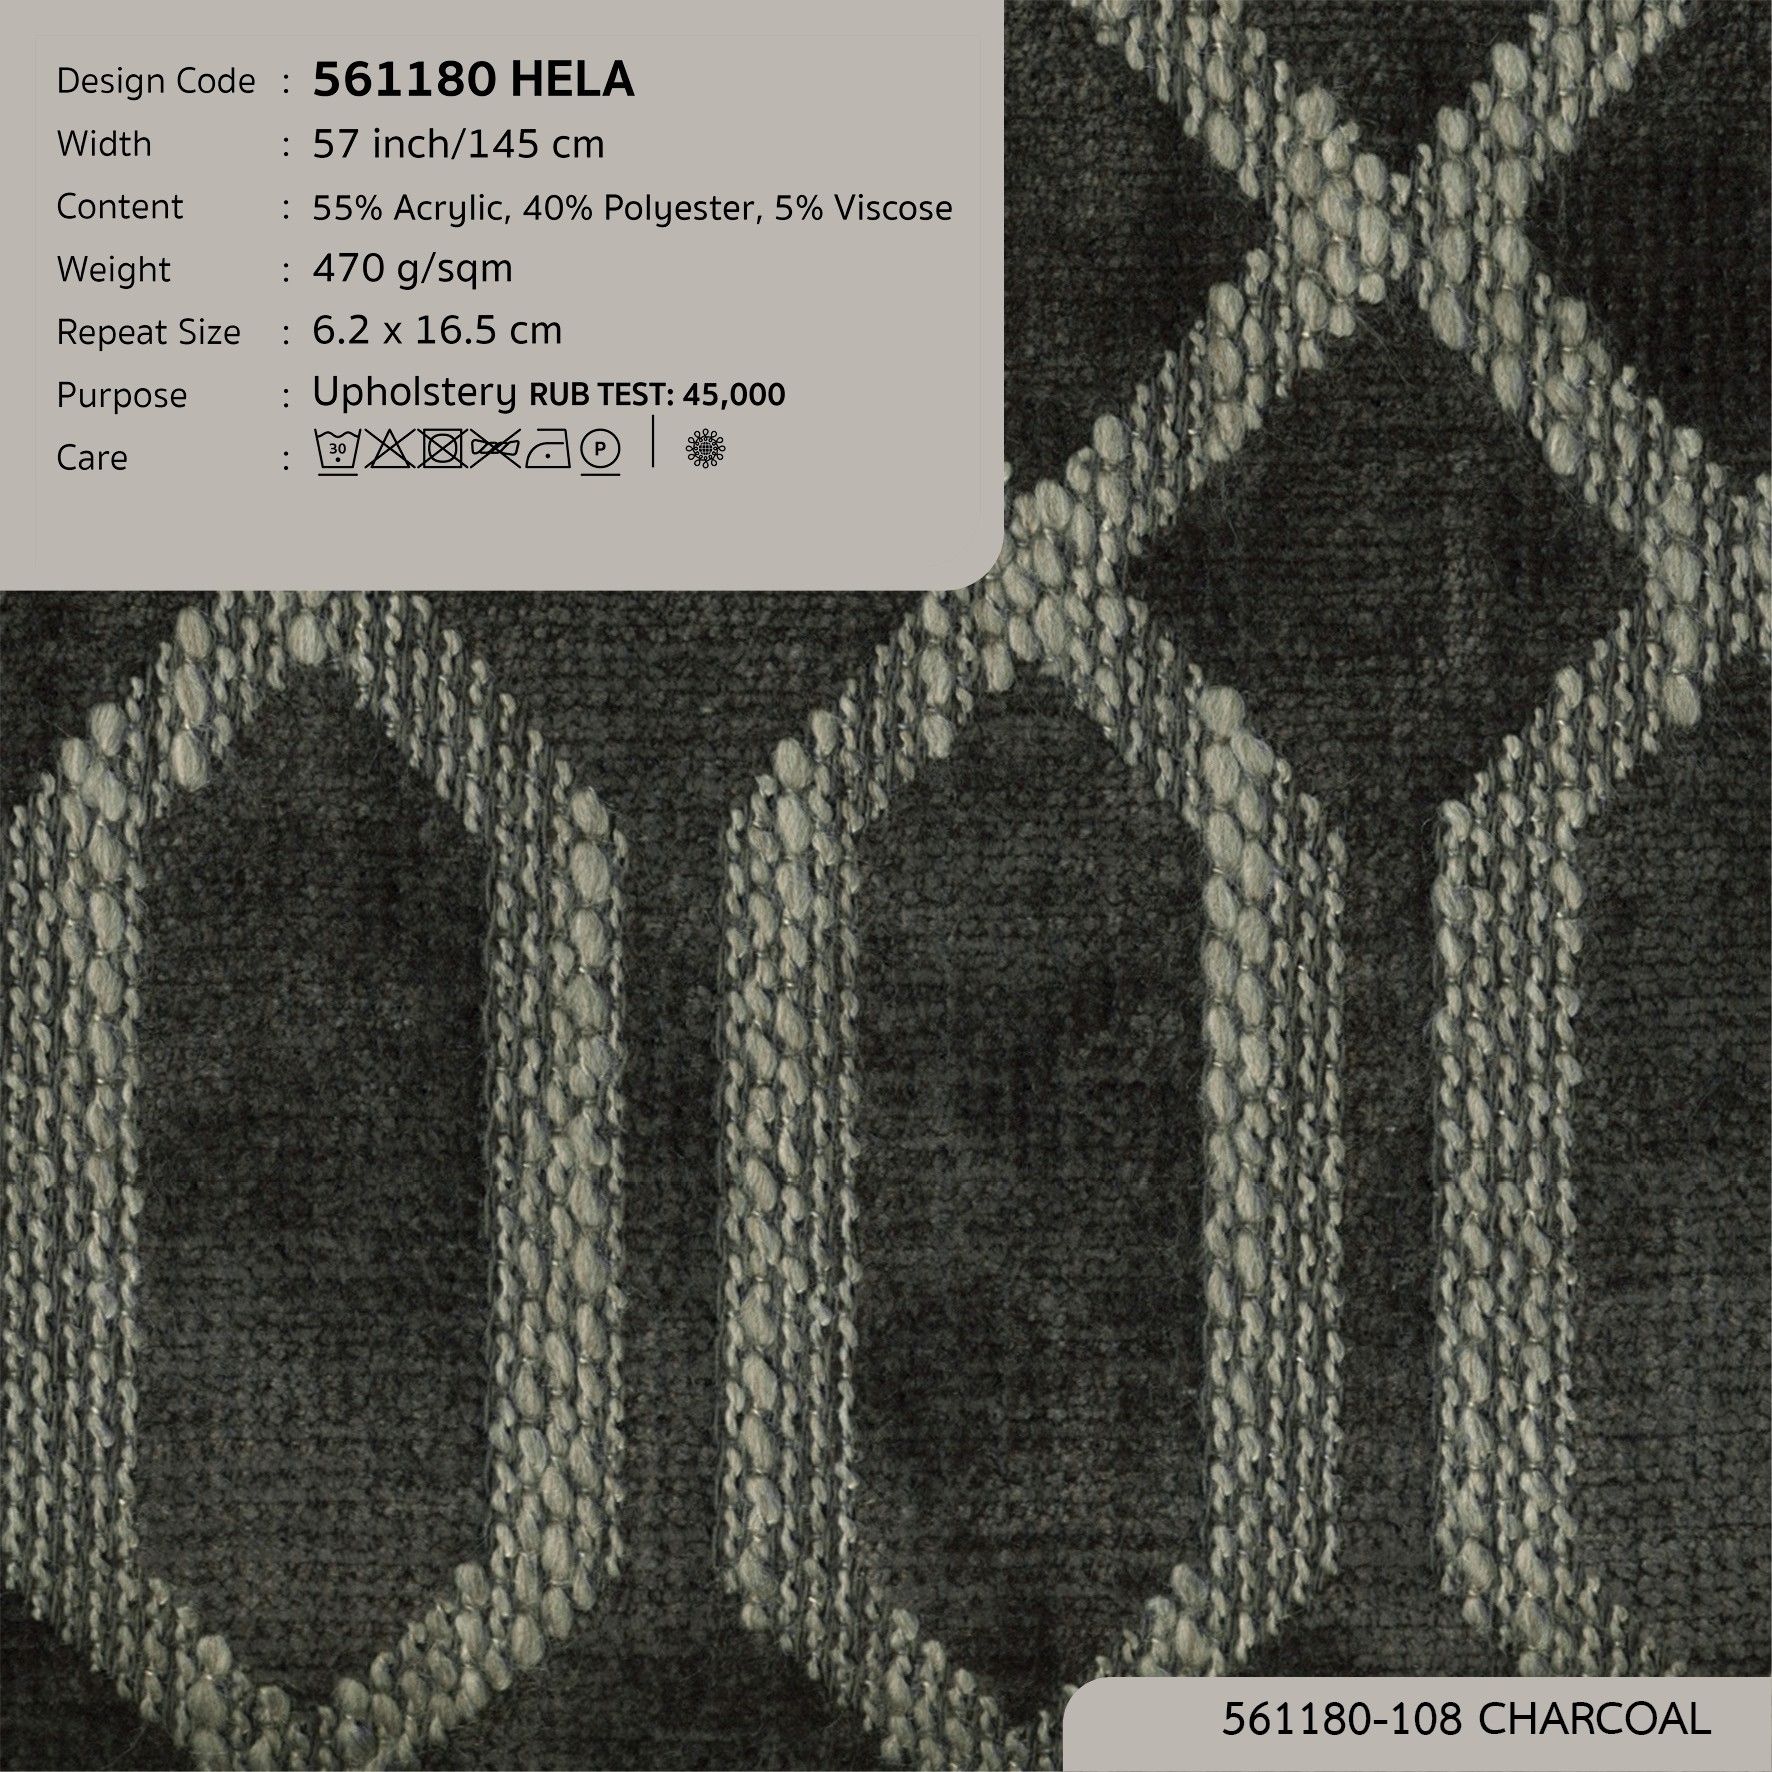  HELA 561180 có sẵn tại DOLCE Gallery 